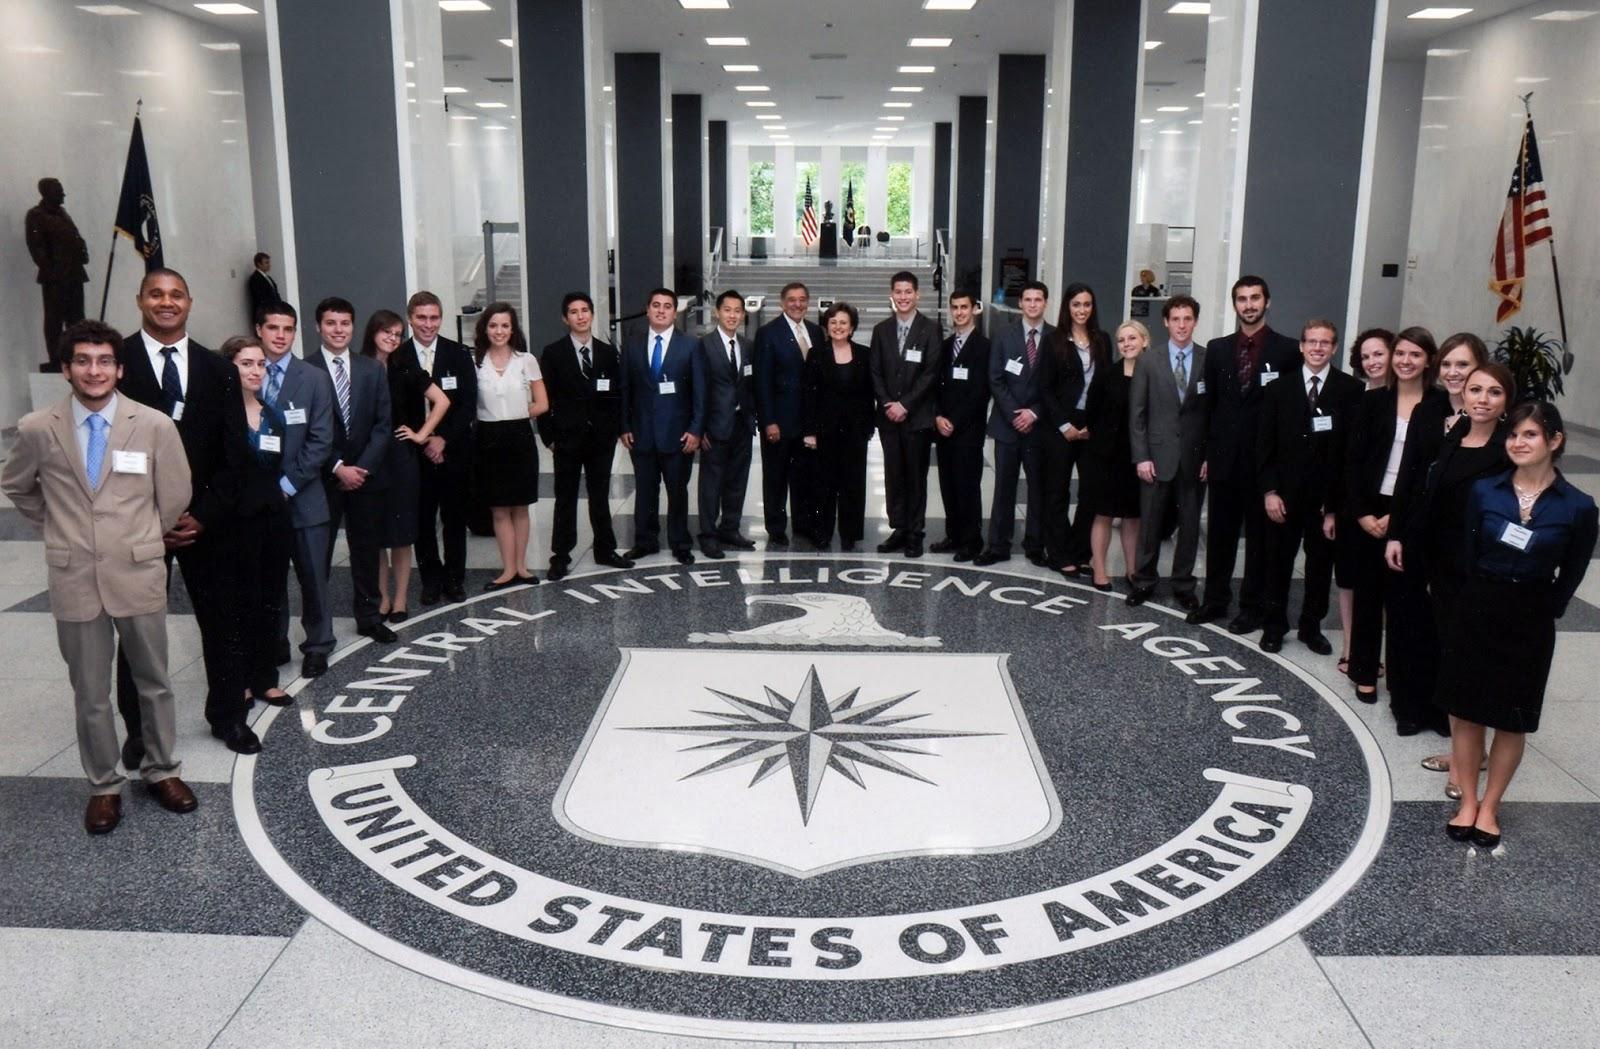 CIA Agents